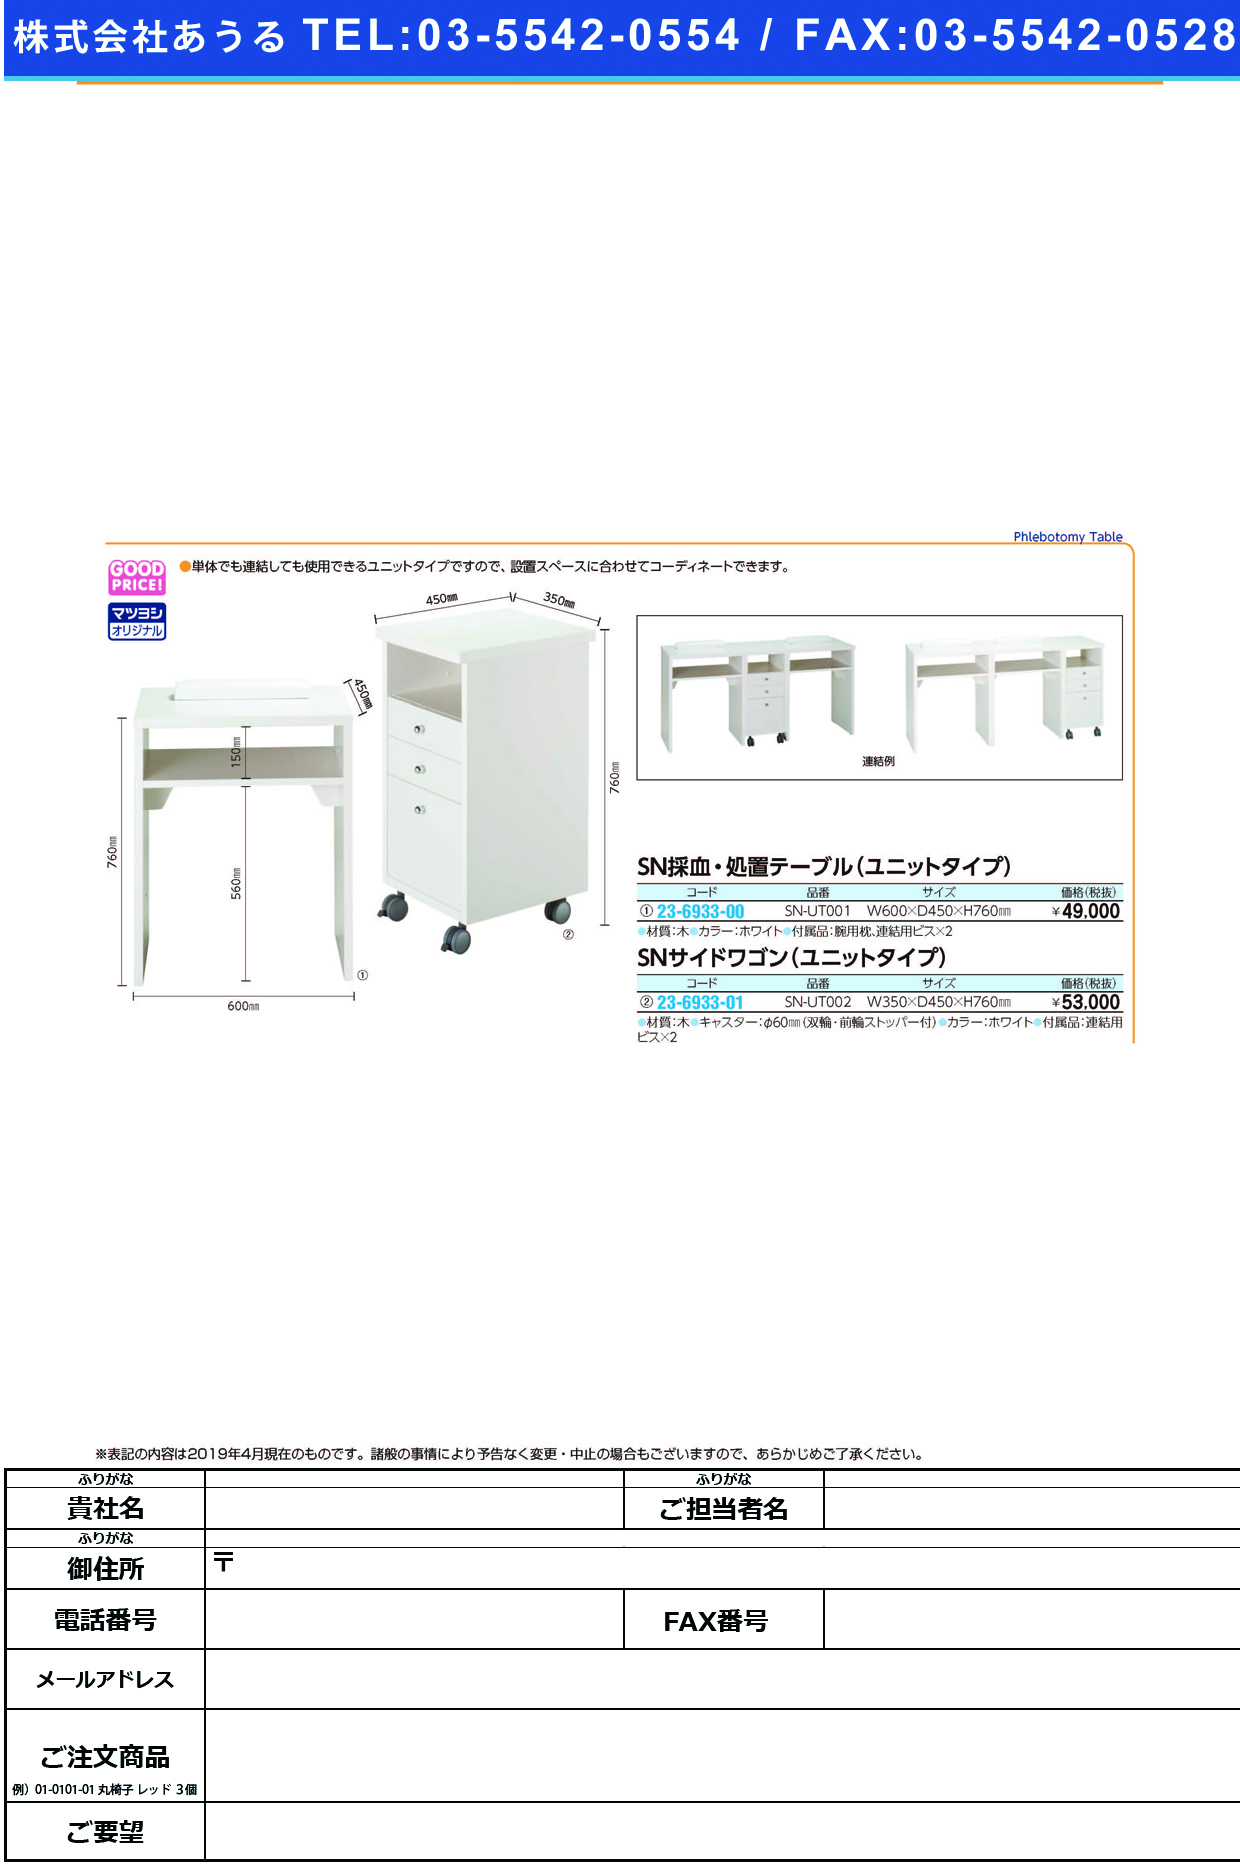 23-6933-00)採血・処置テーブル（ユニットタイプ） SN-UT001(ﾎﾜｲﾄ) ｻｲ 